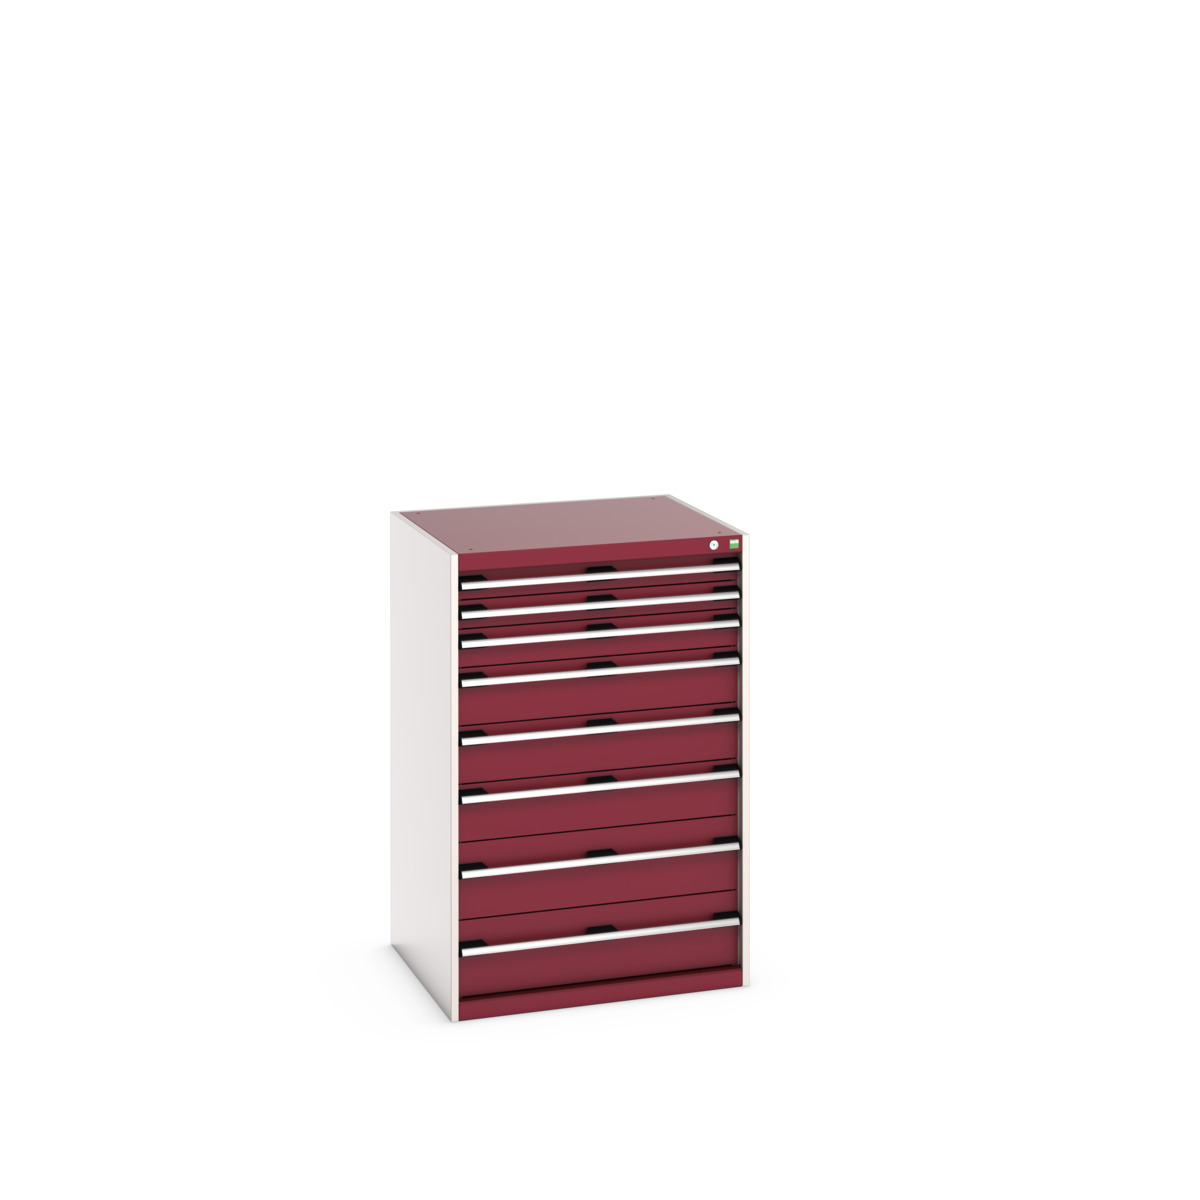 40028034.24V - cubio drawer cabinet